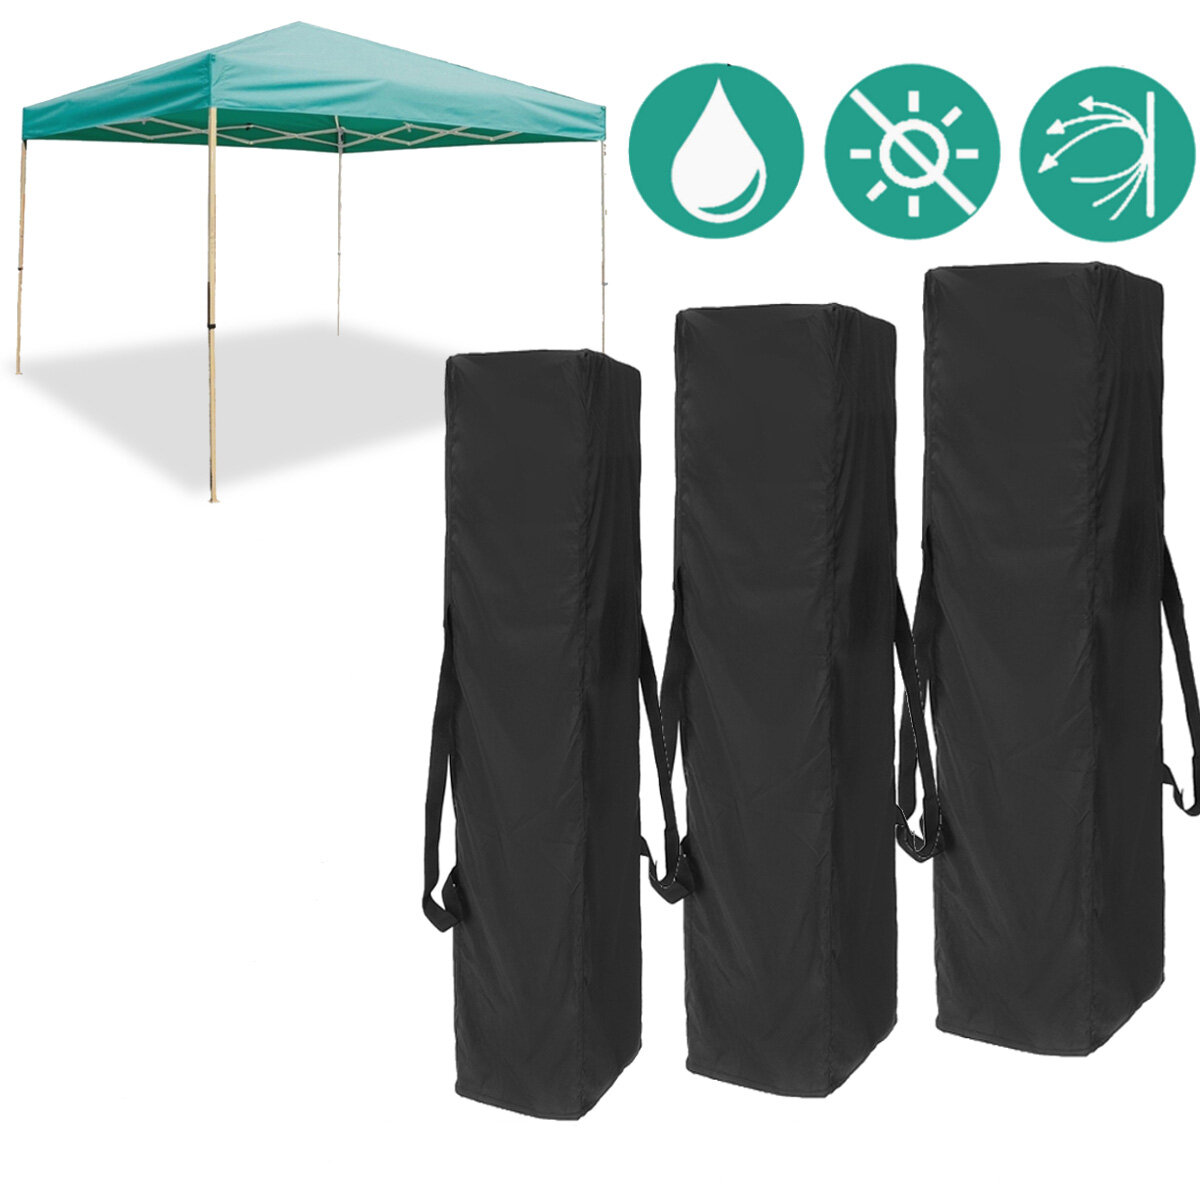 التخييم في الهواء الطلق Gazebo كاري حقيبة محمولة ضد للماء واقية من الشمس مظلة حقيبة التخزين 